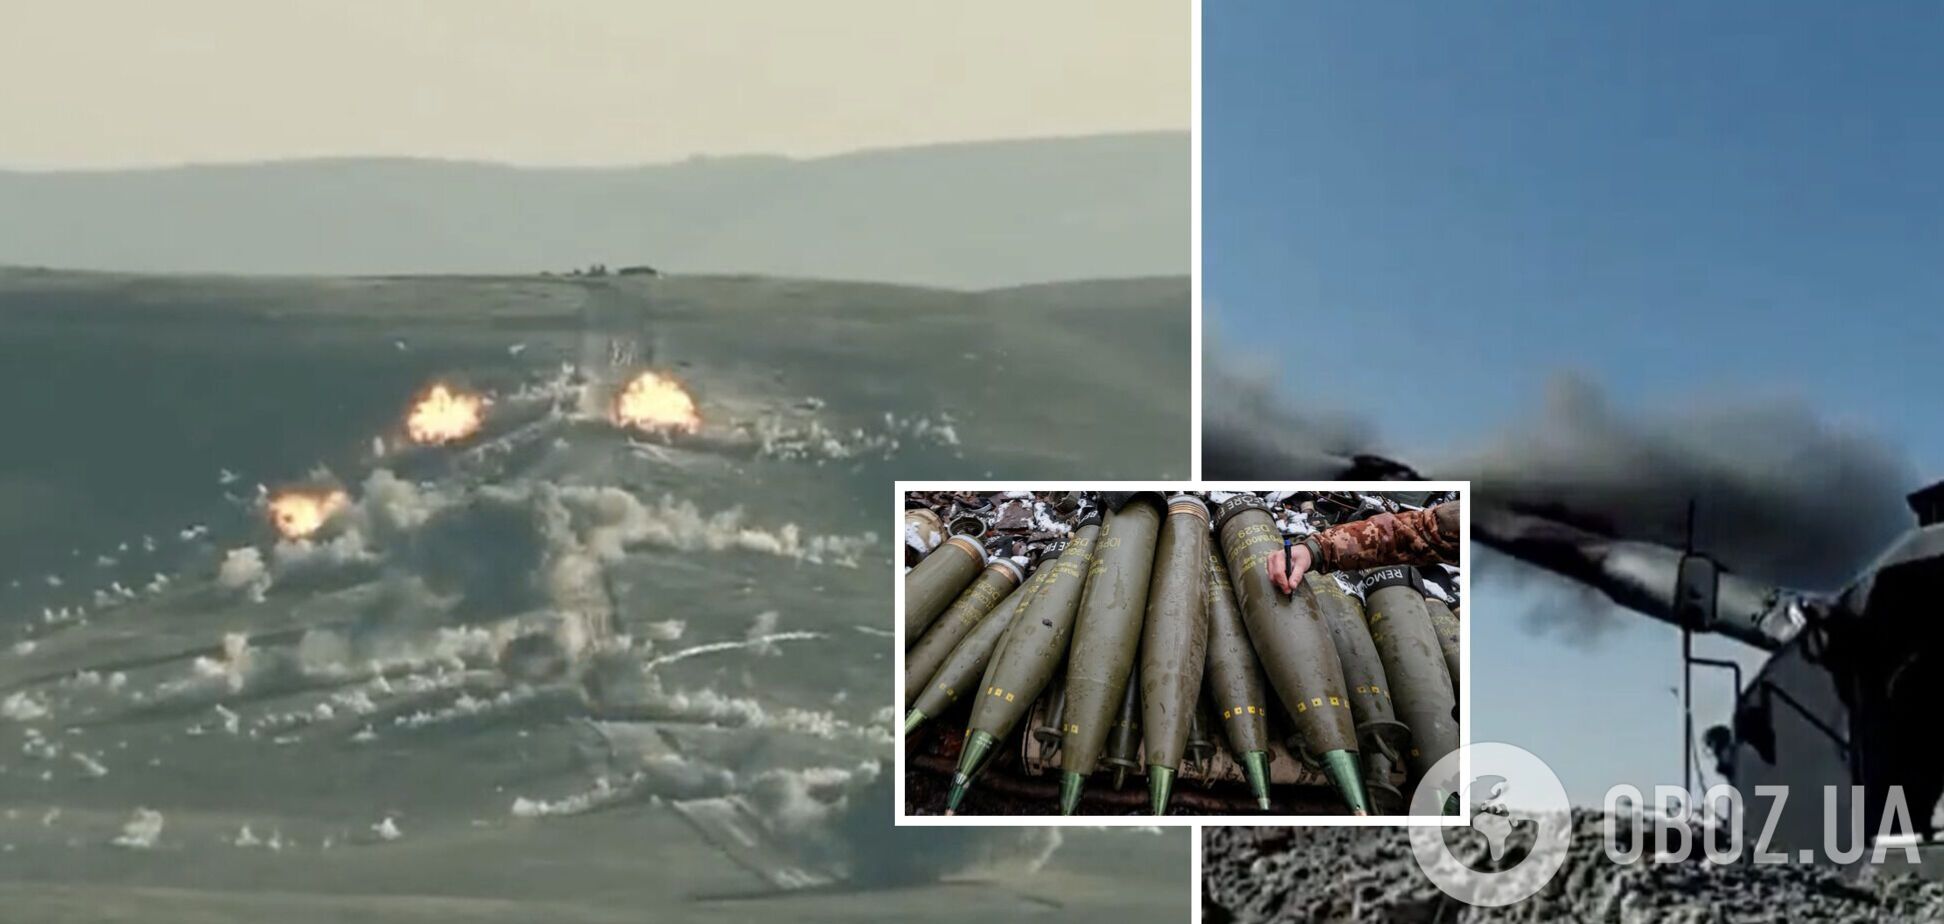 Зона поражения огромная: как работают кассетные снаряды DPICM, которые Украина получит от США. Видео